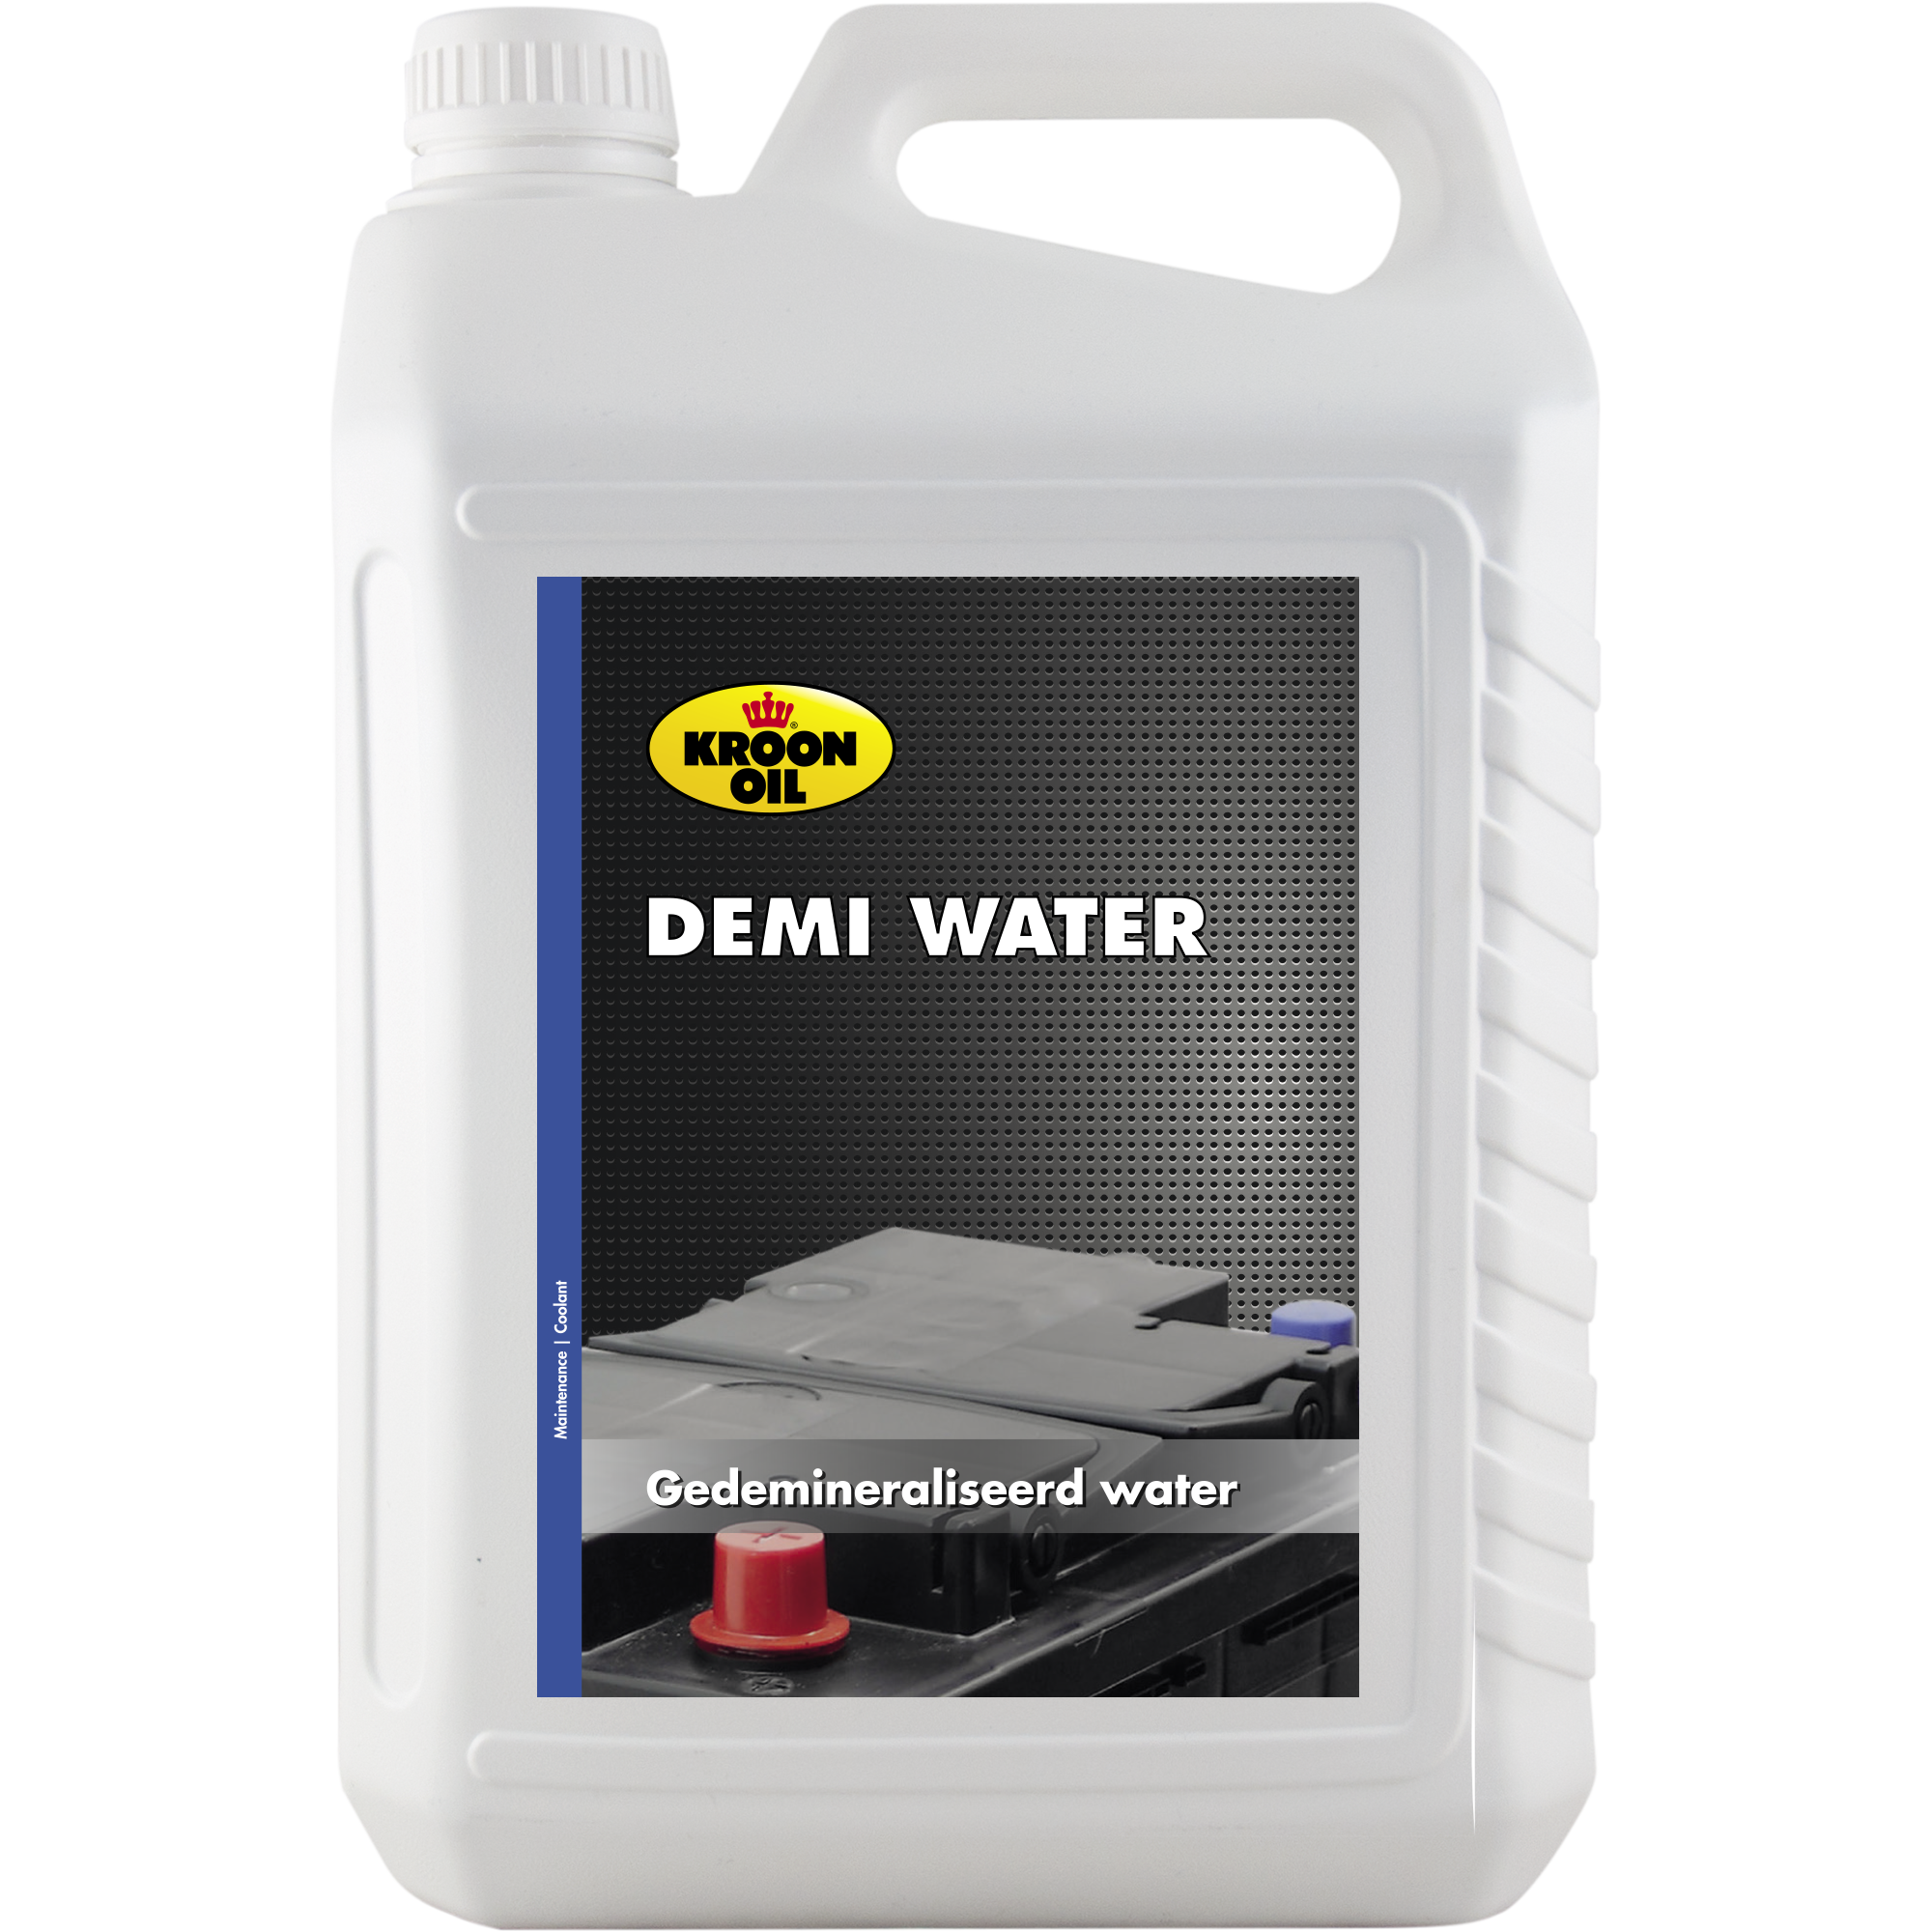 05307-5 Demi Water gedemineraliseerd water, is door zijn specifieke samenstelling volkomen vrij van alle minerale zouten, waaronder kalk, en chloor.